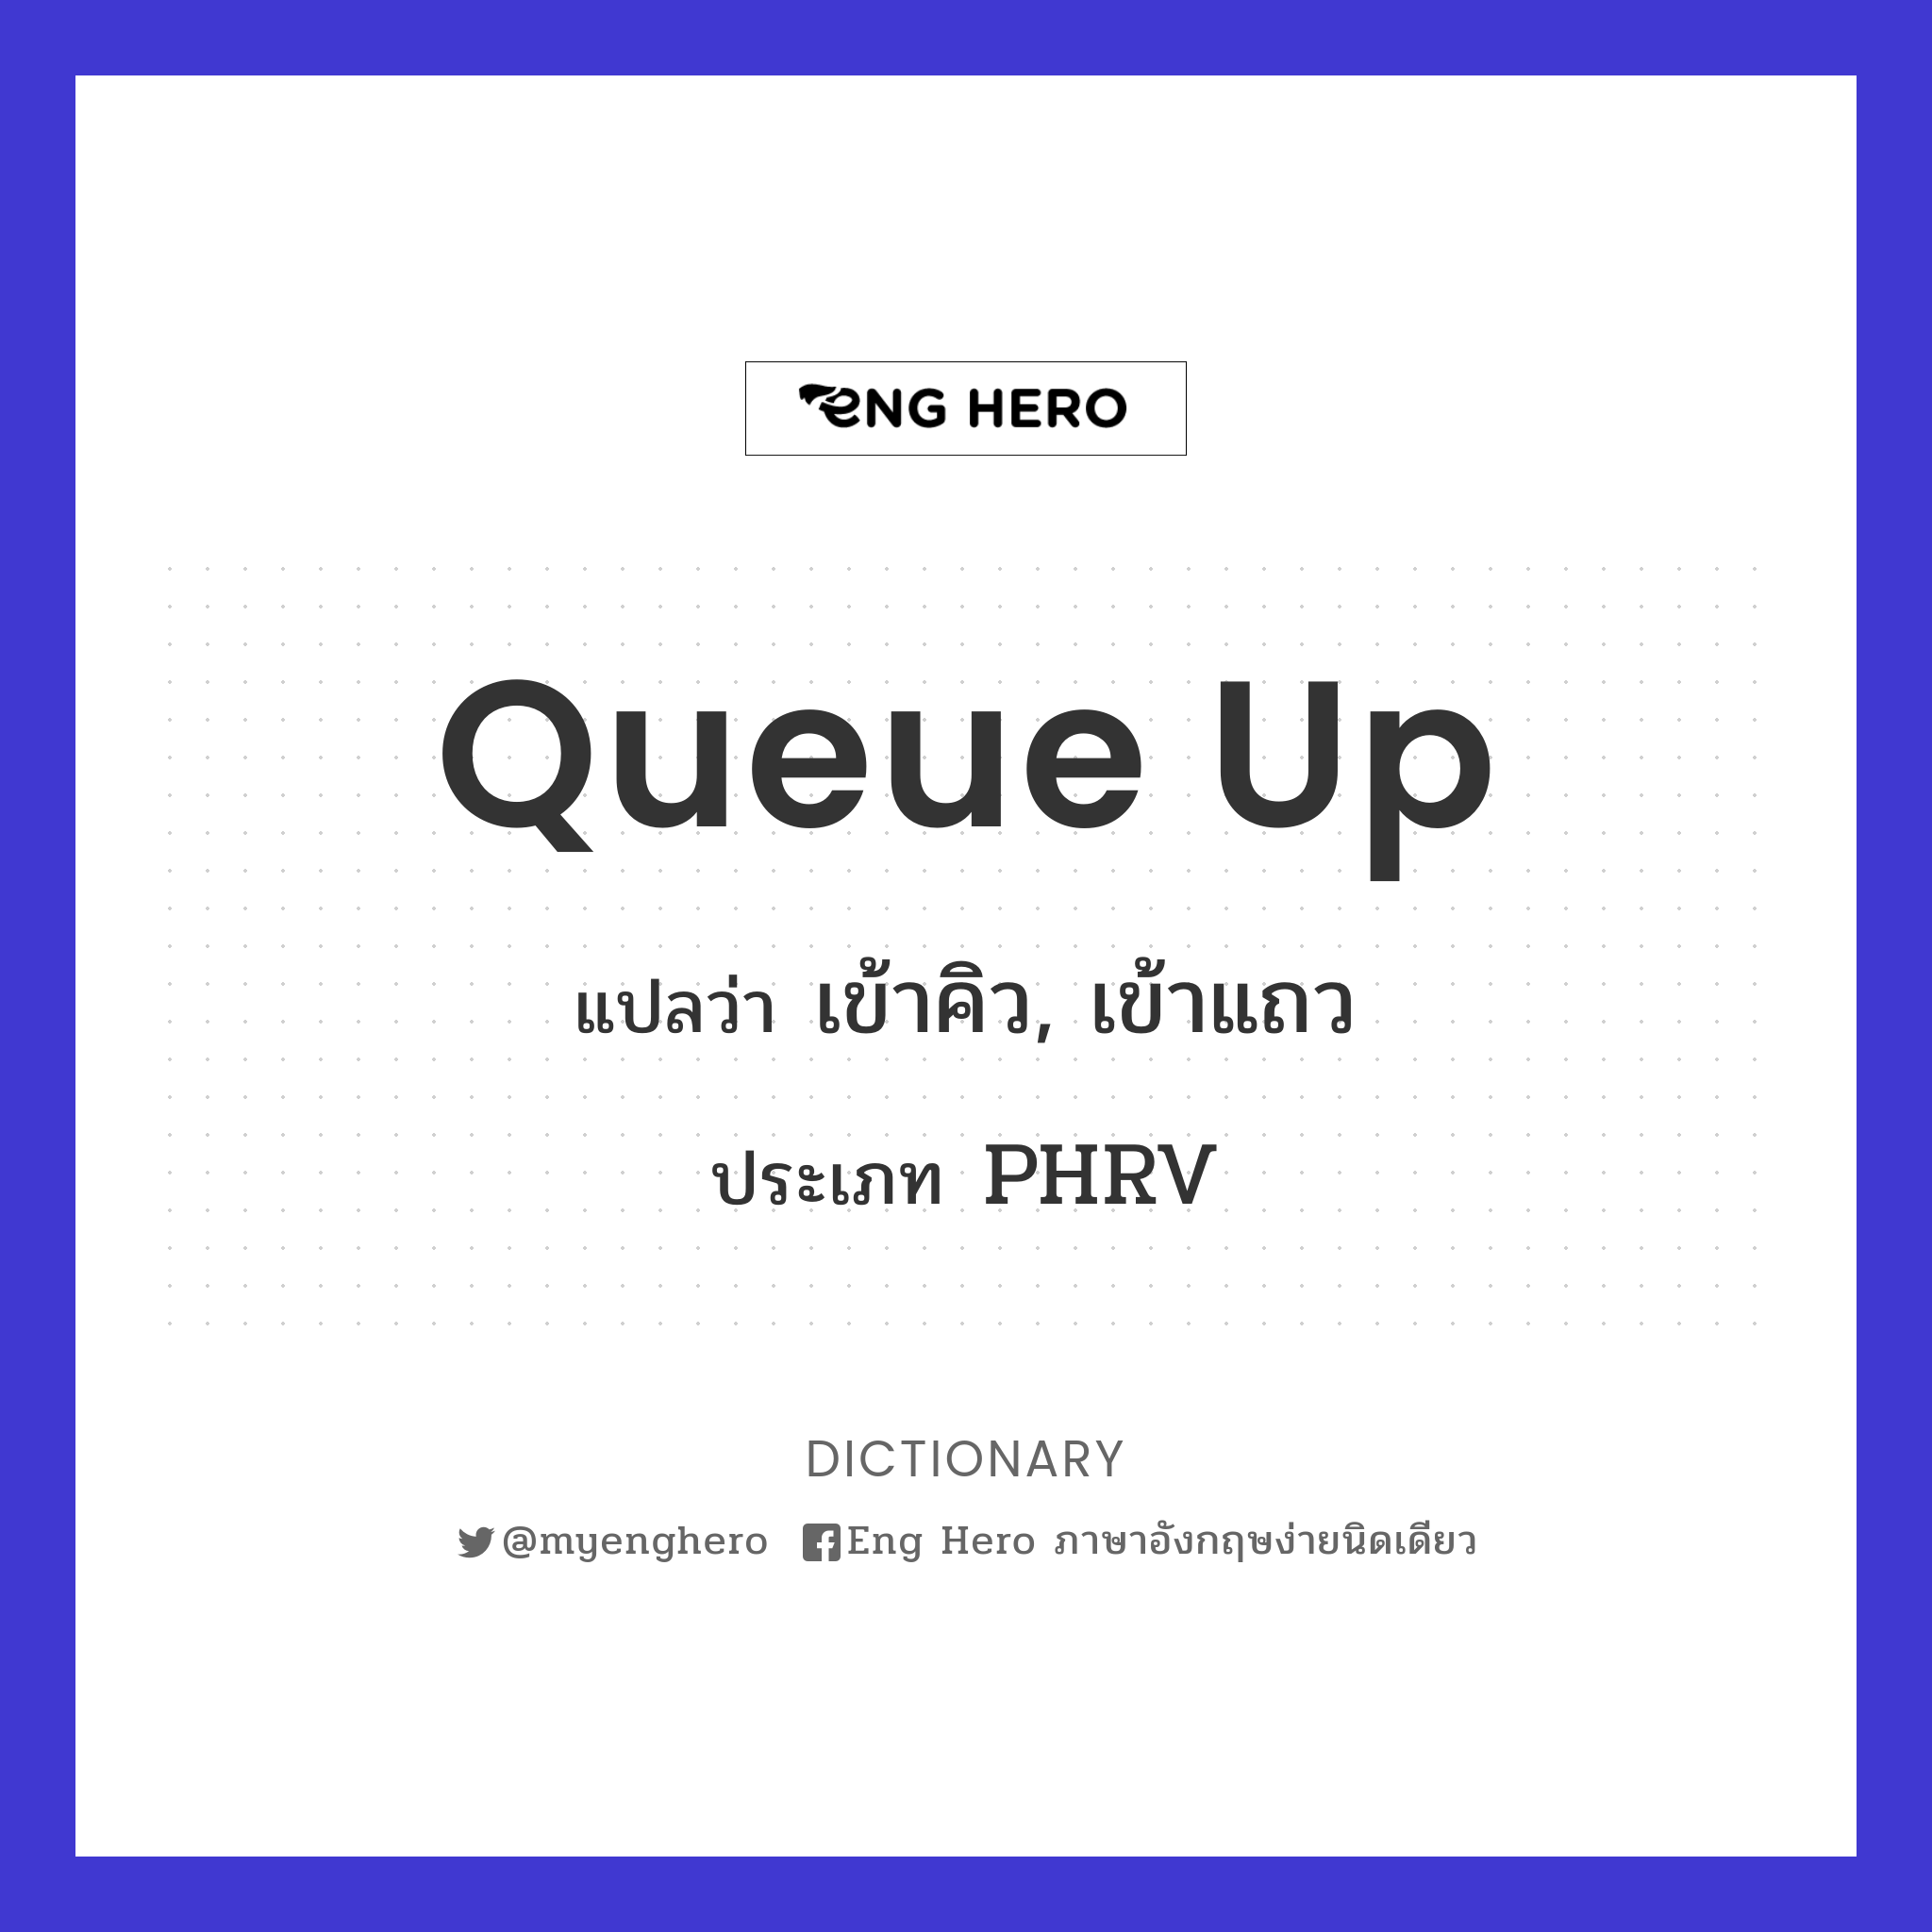 Queue Up แปลว่า เข้าคิว | Eng Hero เรียนภาษาอังกฤษ ออนไลน์ ฟรี